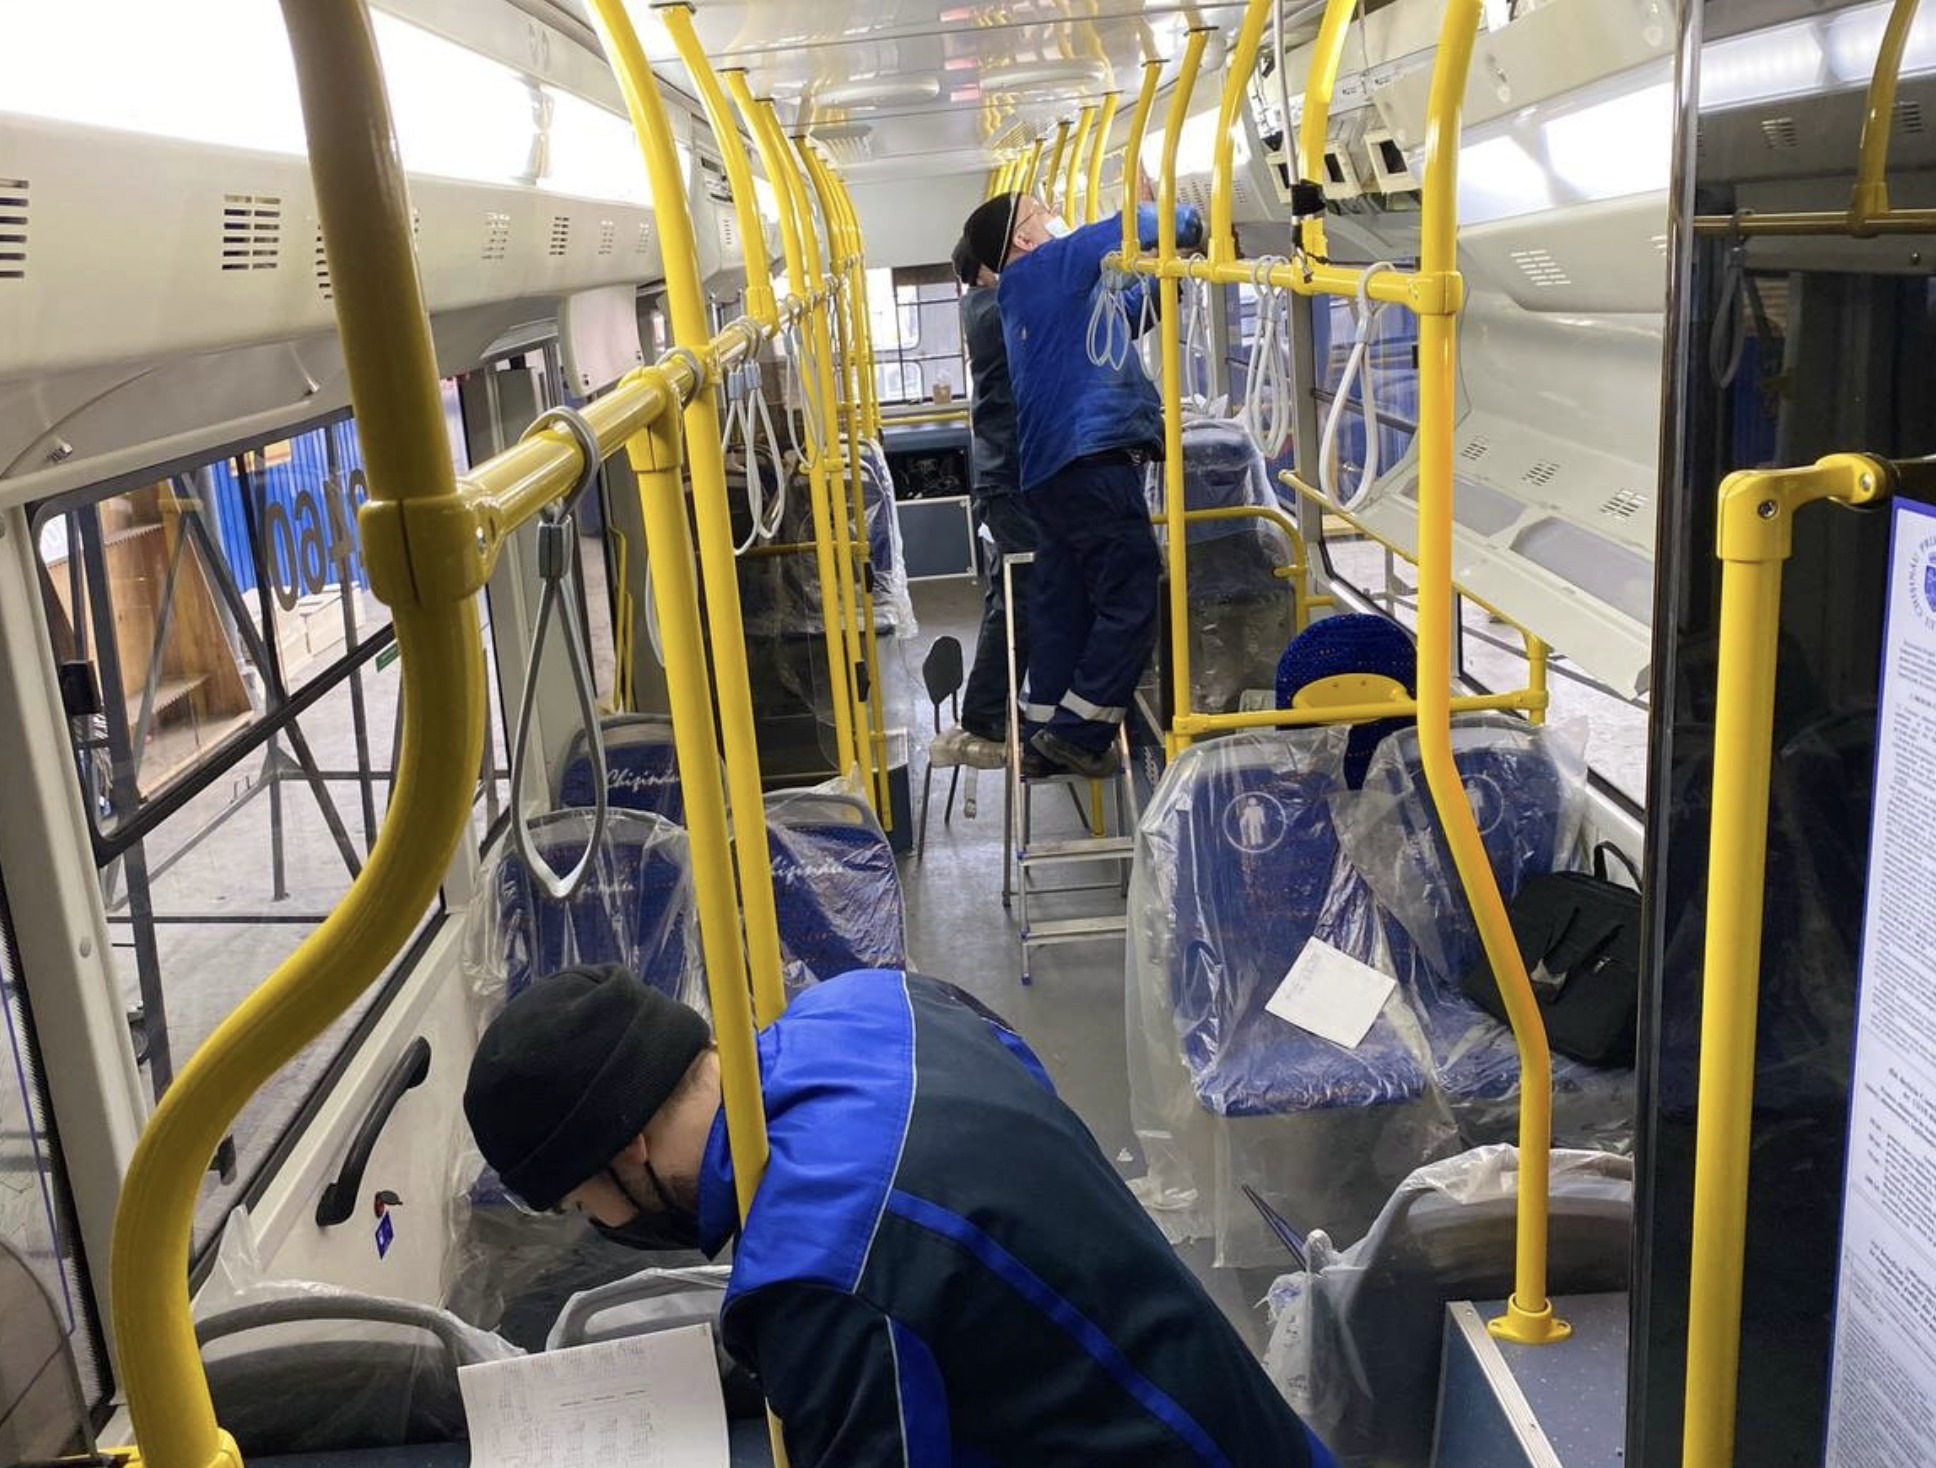 (ФОТО) В Кишиневе выйдут на линию 20 новых троллейбусов